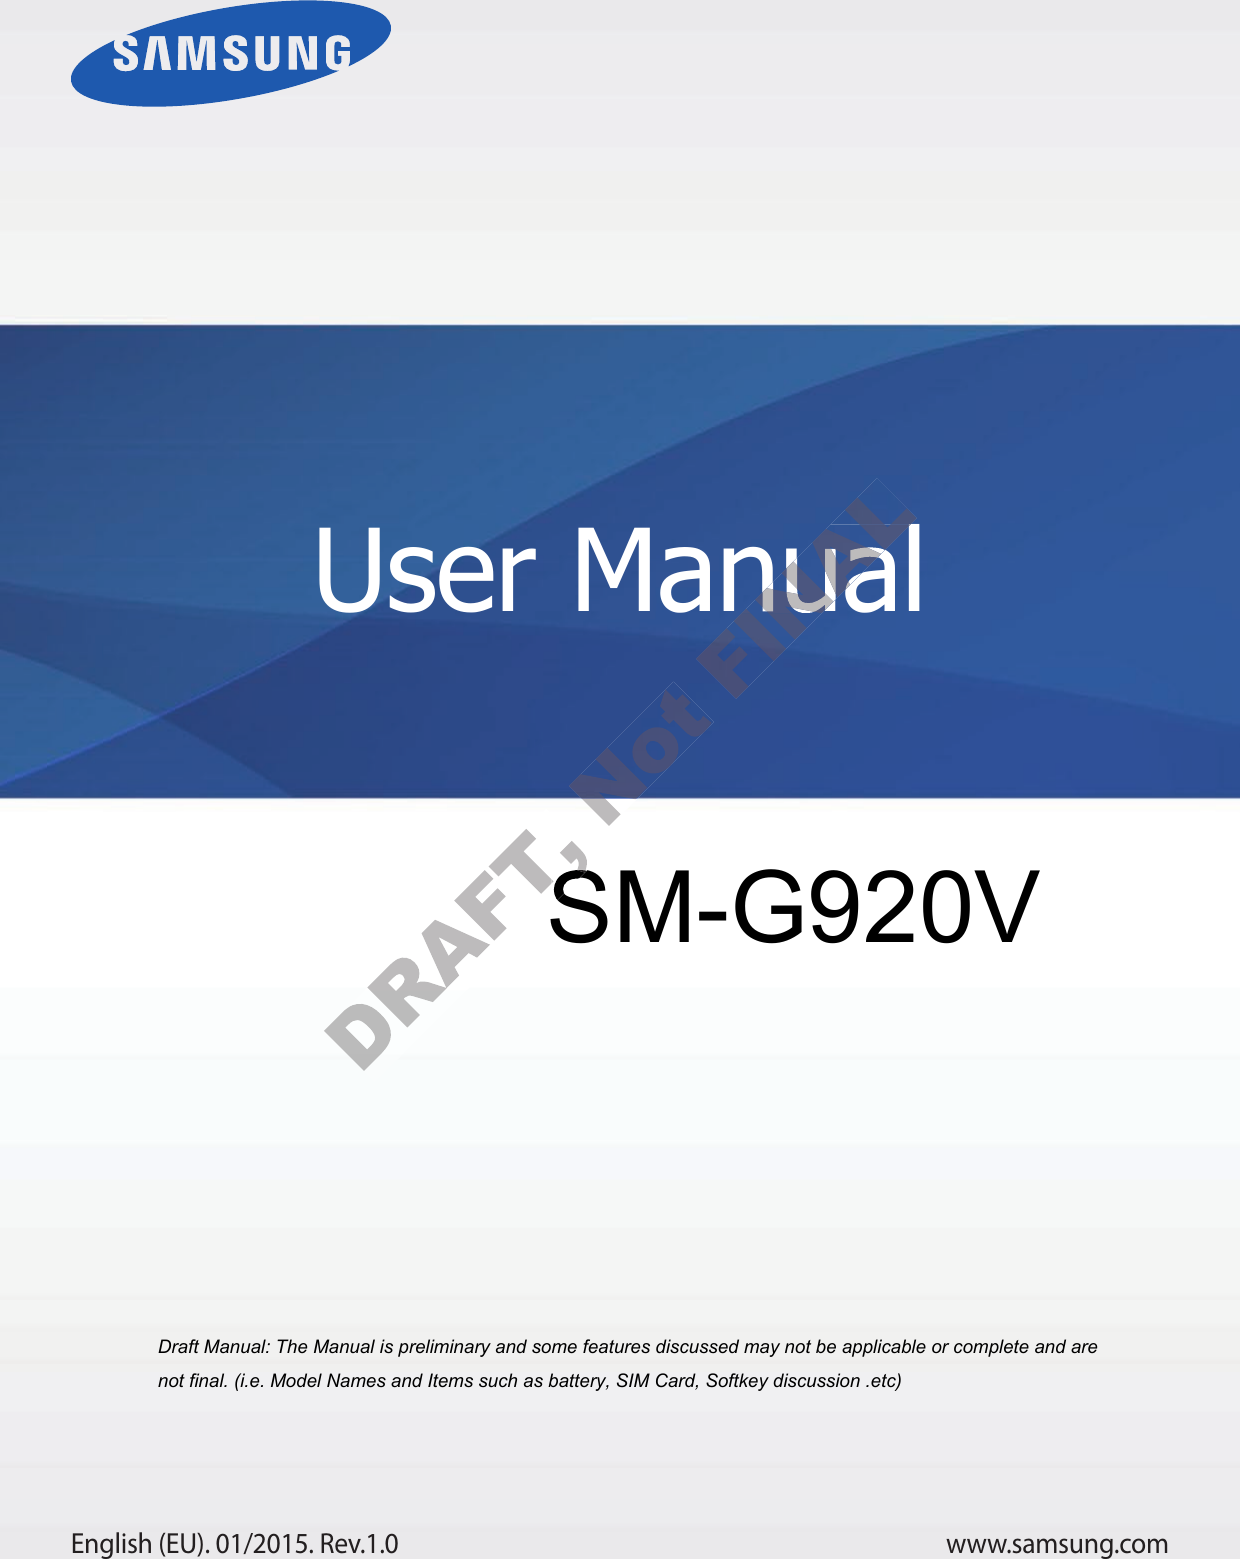 www.samsung.comUser ManualEnglish (EU). 01/2015. Rev.1.0a ana  ana  na and  a dd a n  aa   and a n na  d a and   a a  ad  dn SM-G92 User ManualUser Manual